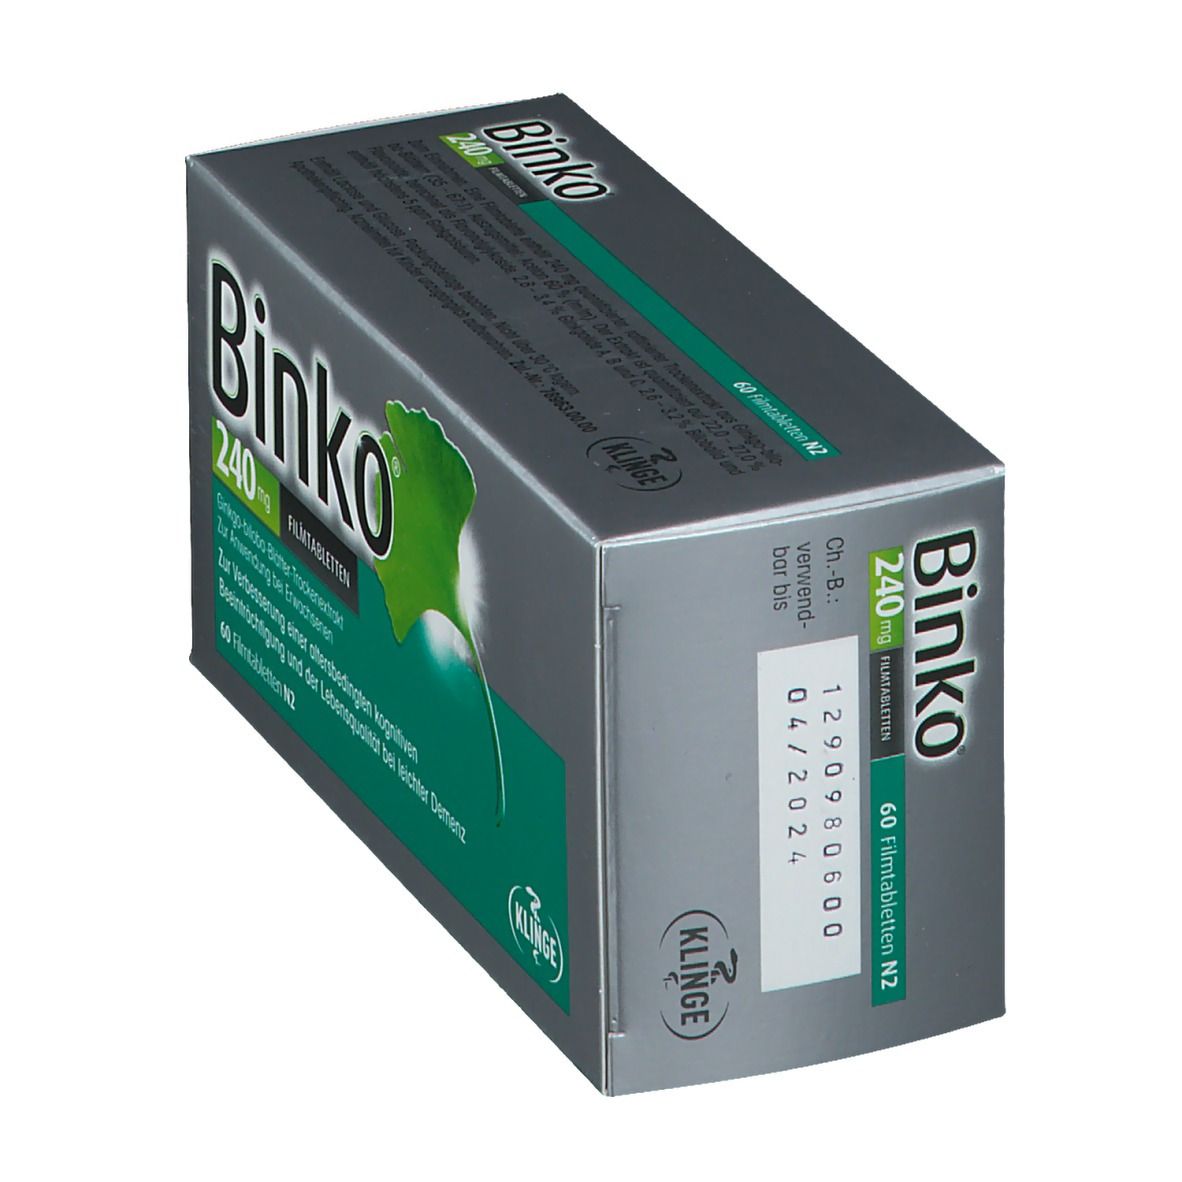 Binko® 240 mg